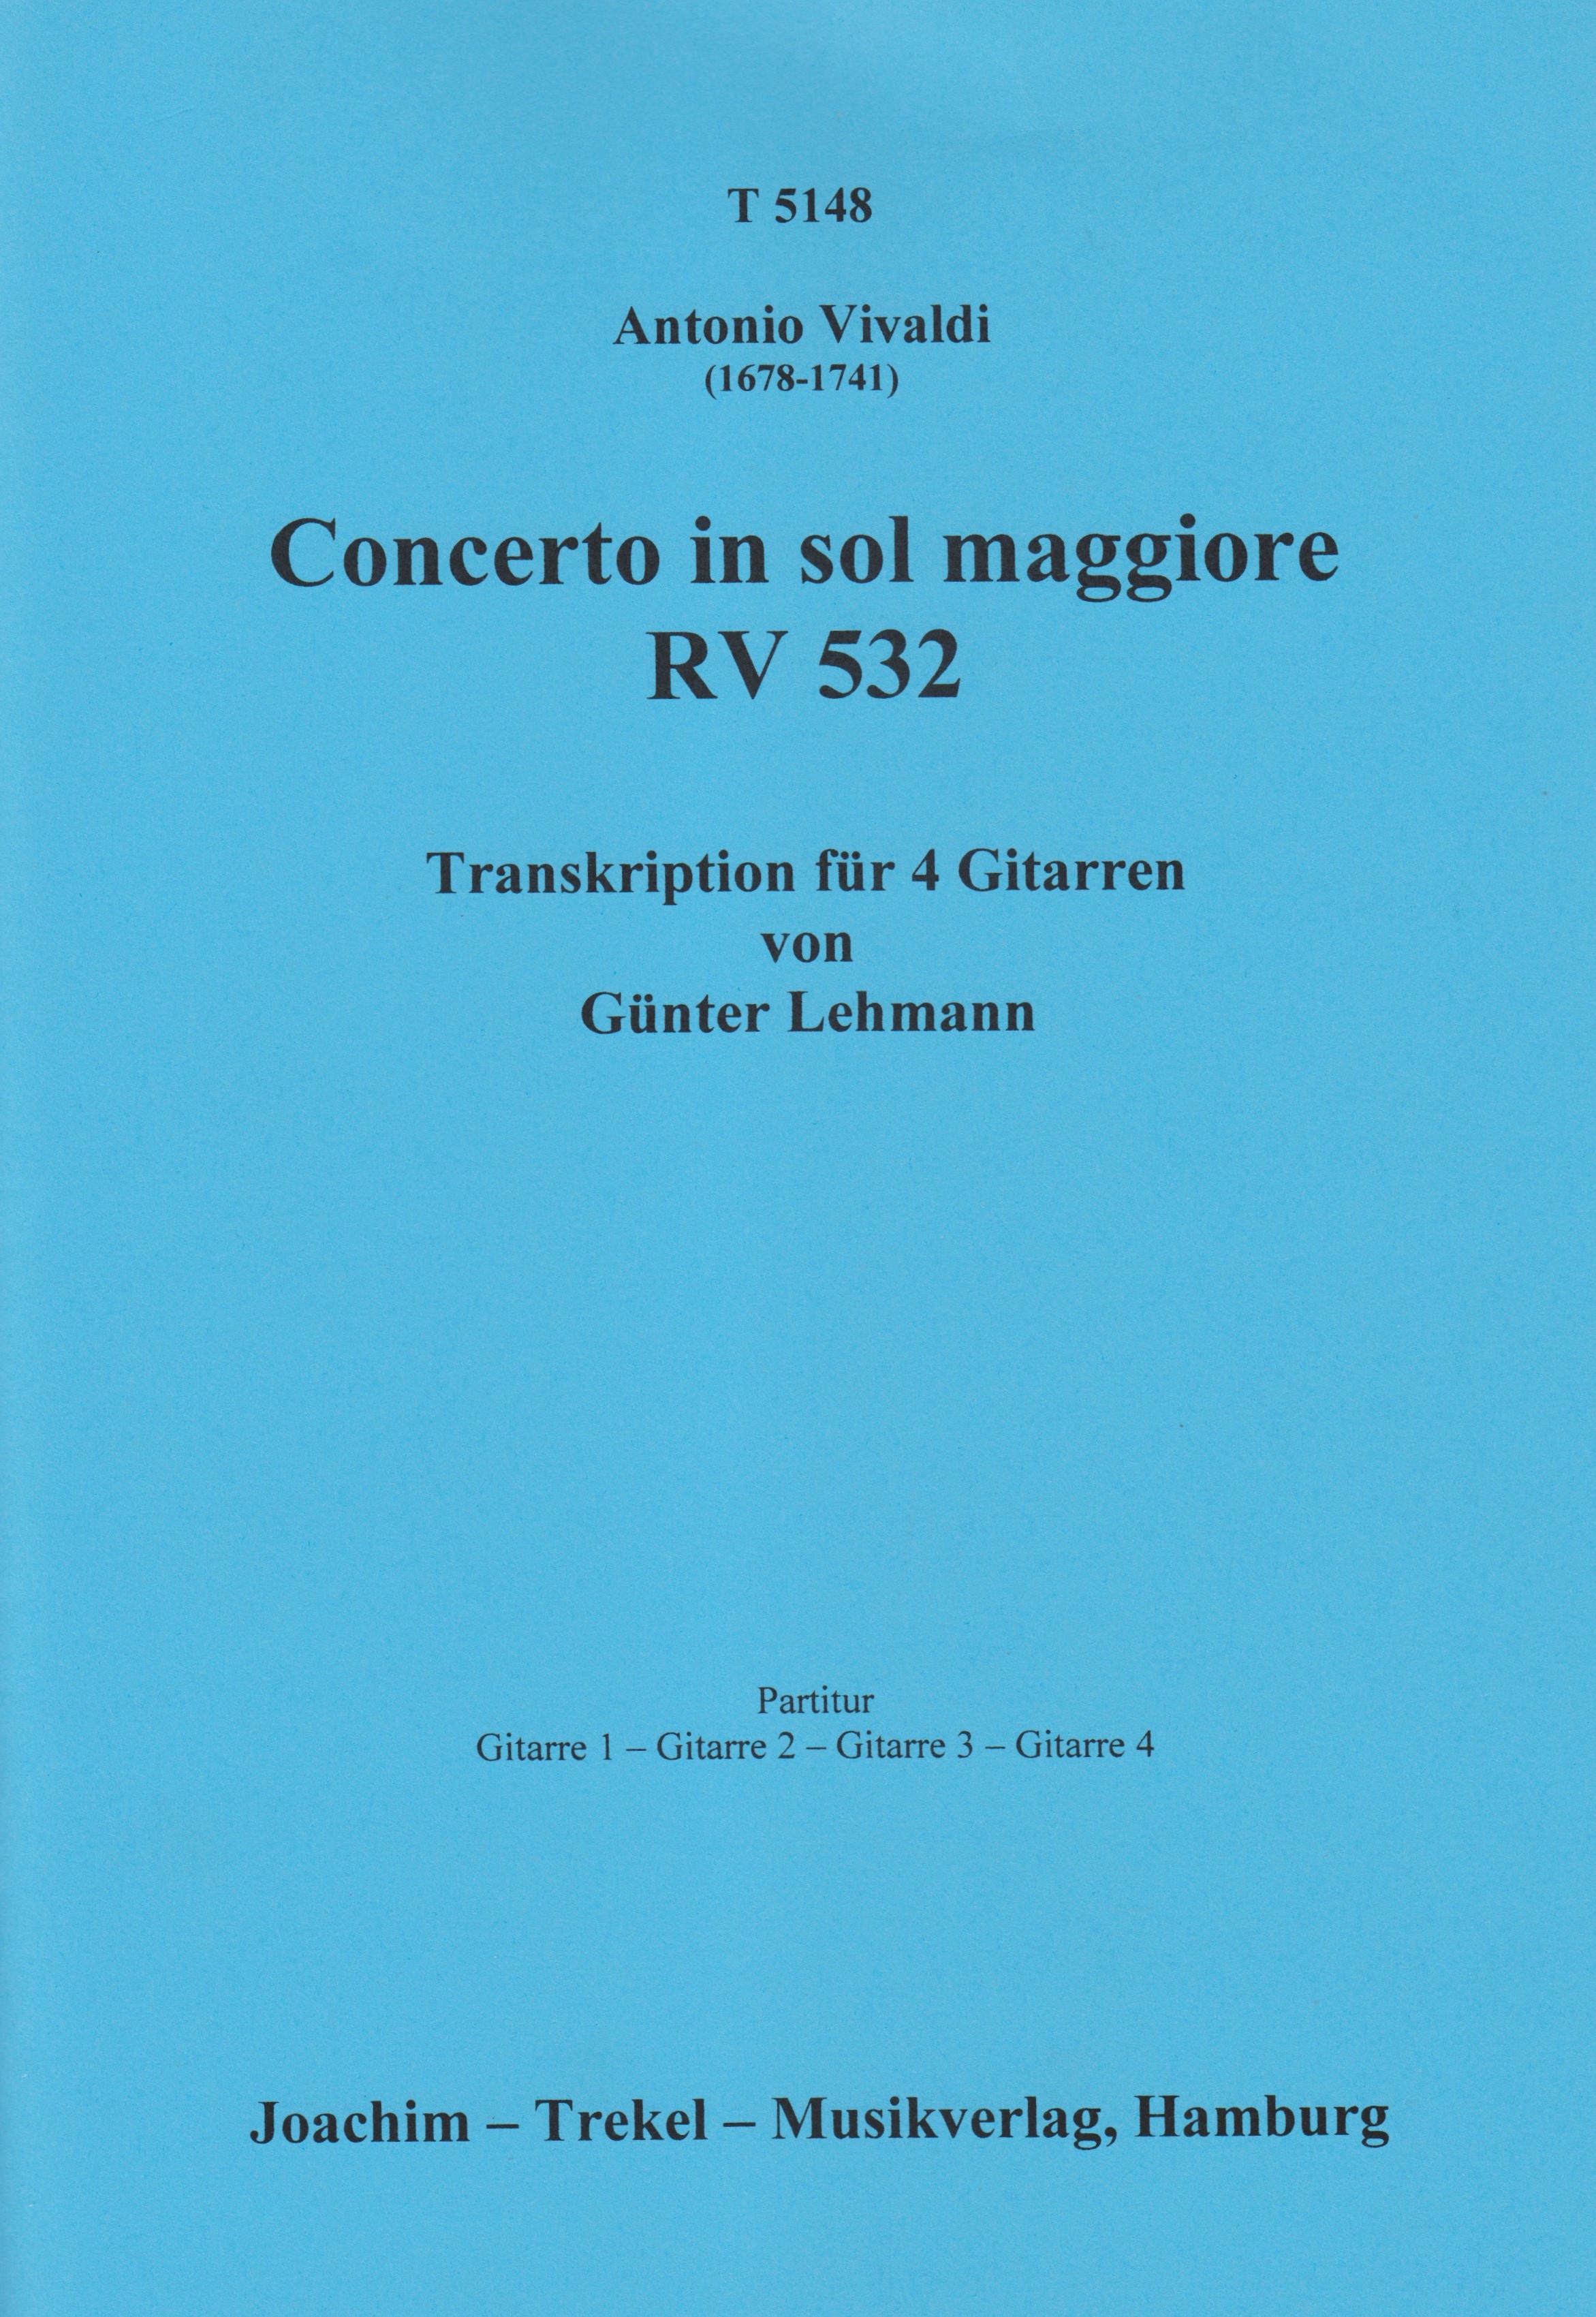 Concerto in sol maggiore RV 532